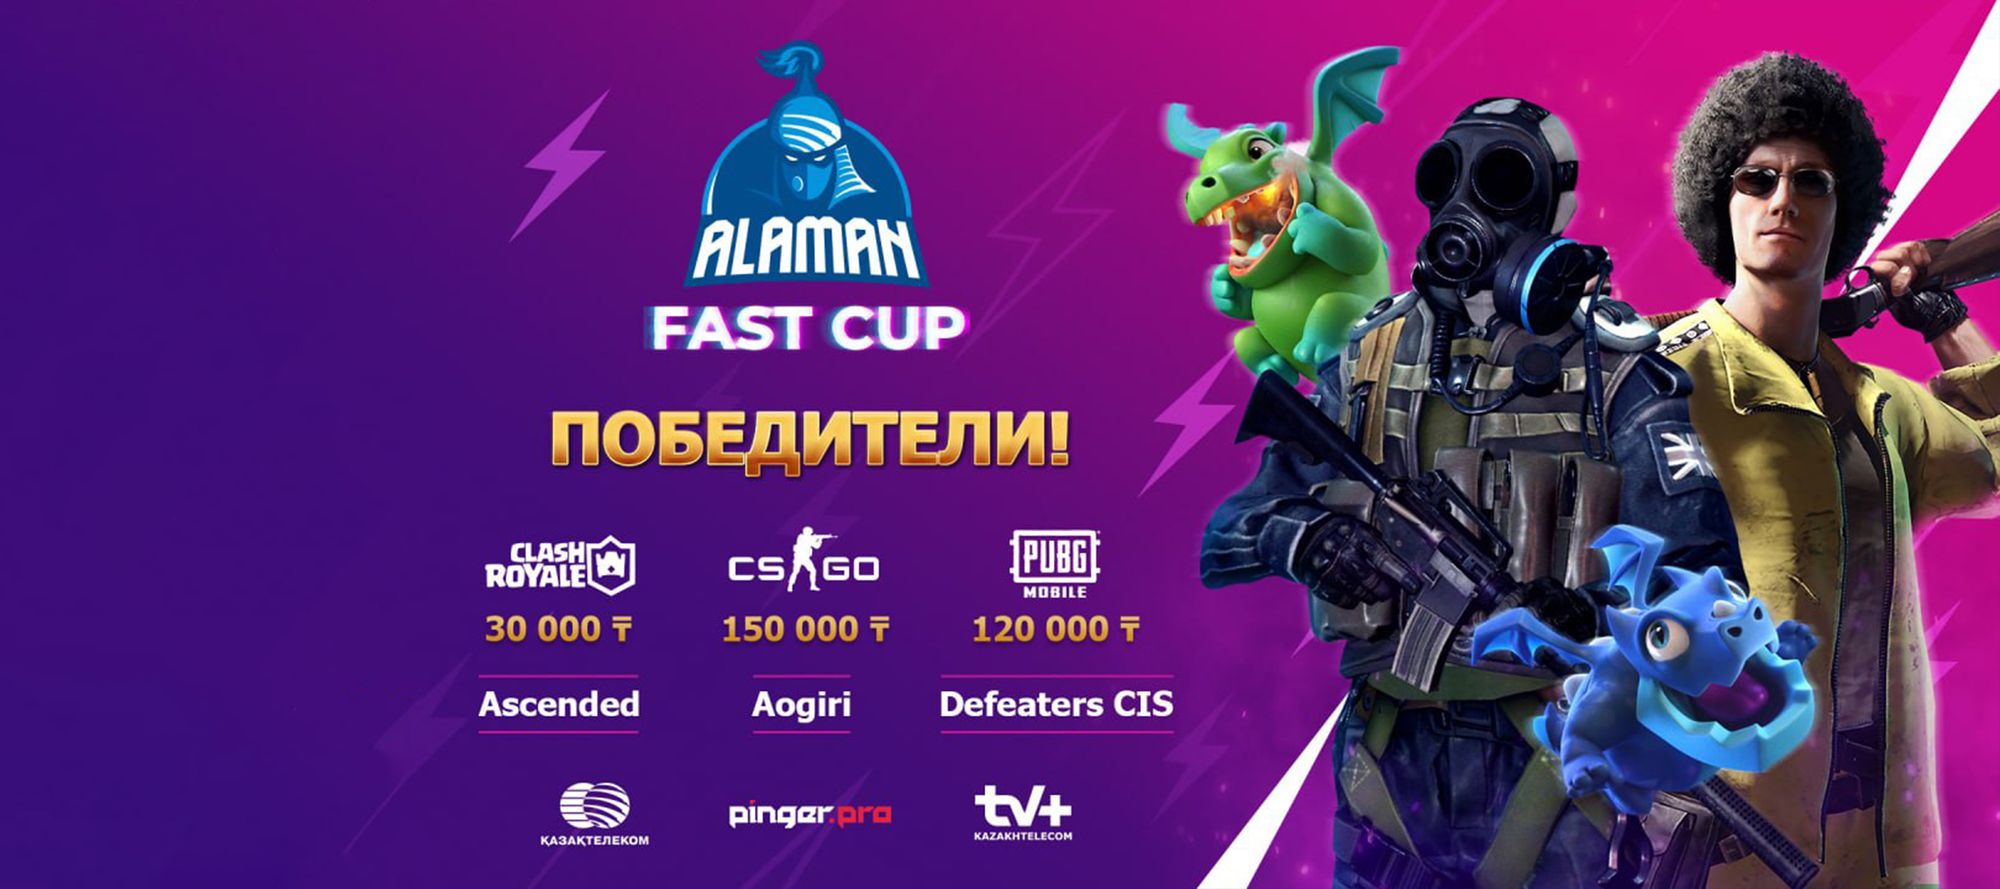 Итоги и победители ALAMAN Fast Cup